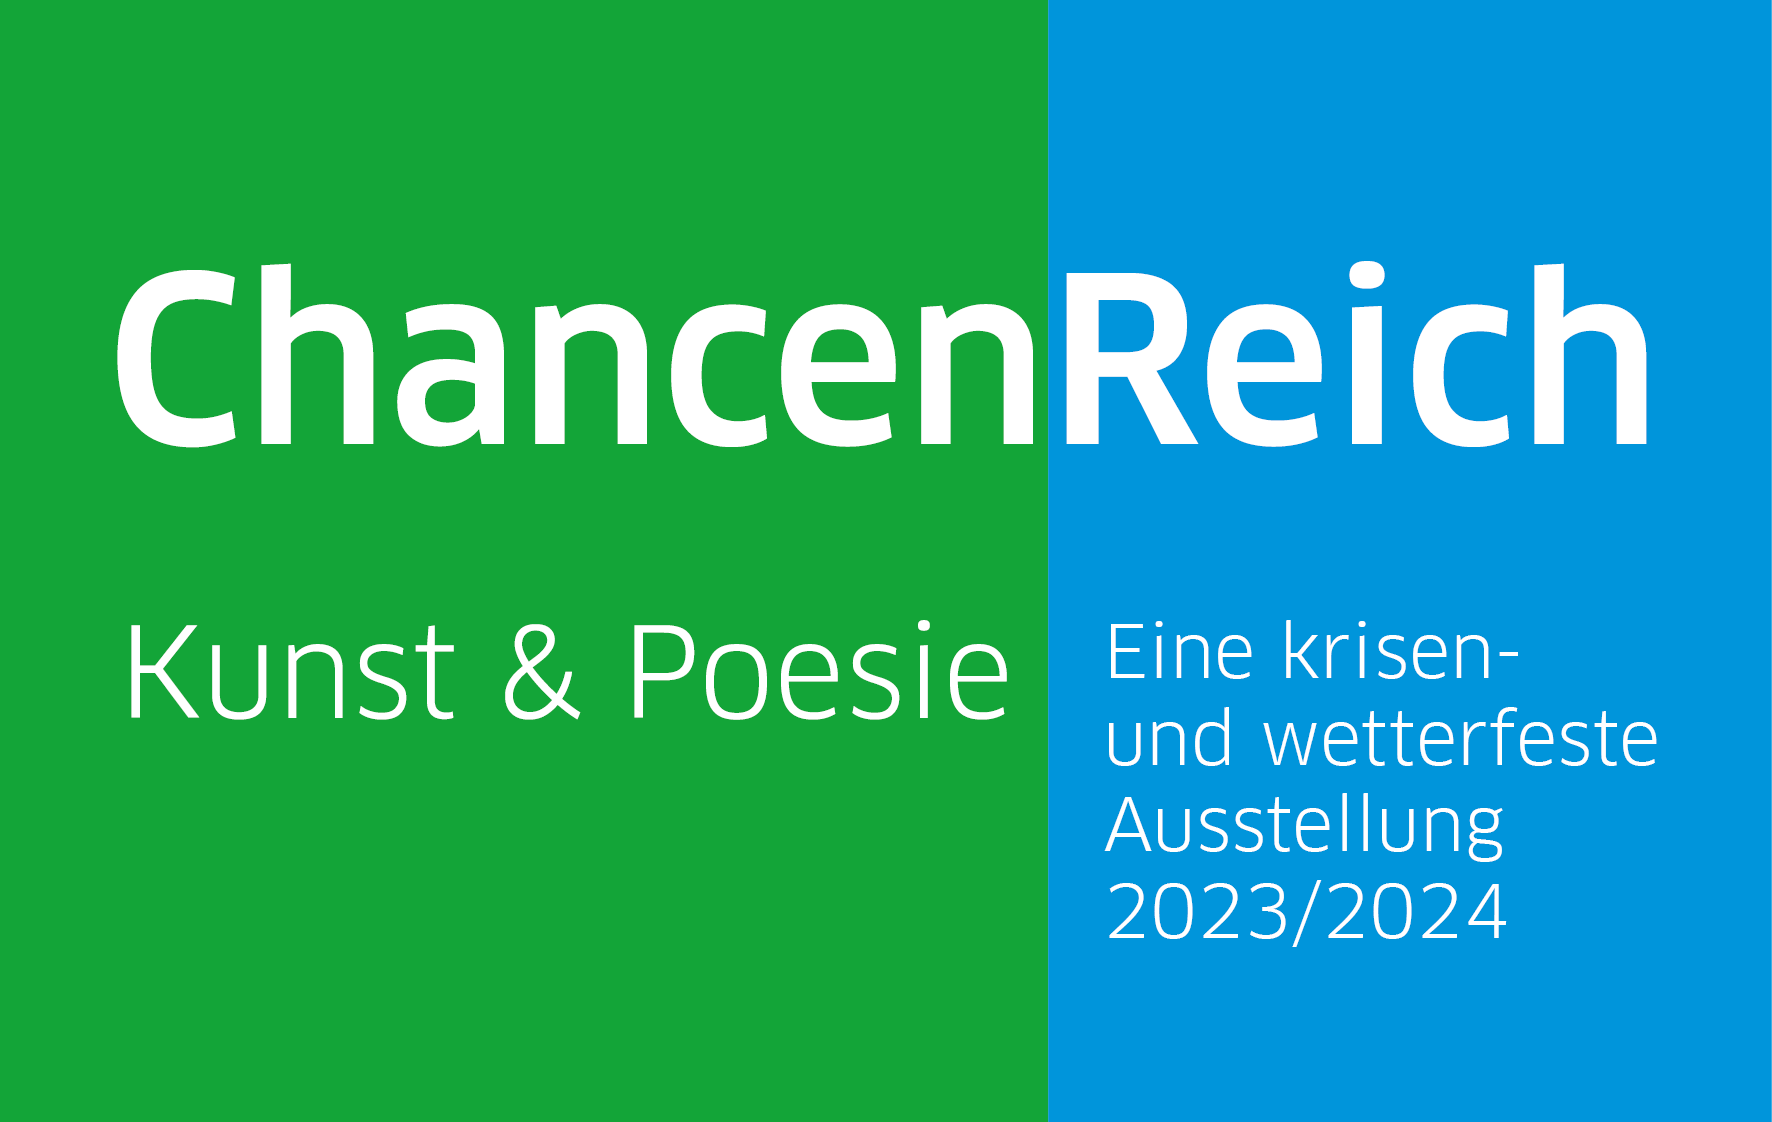 05.12.2023 in Metzingen auf dem Kelternplatz: Die Bannerausstellung ChancenReich beginnt